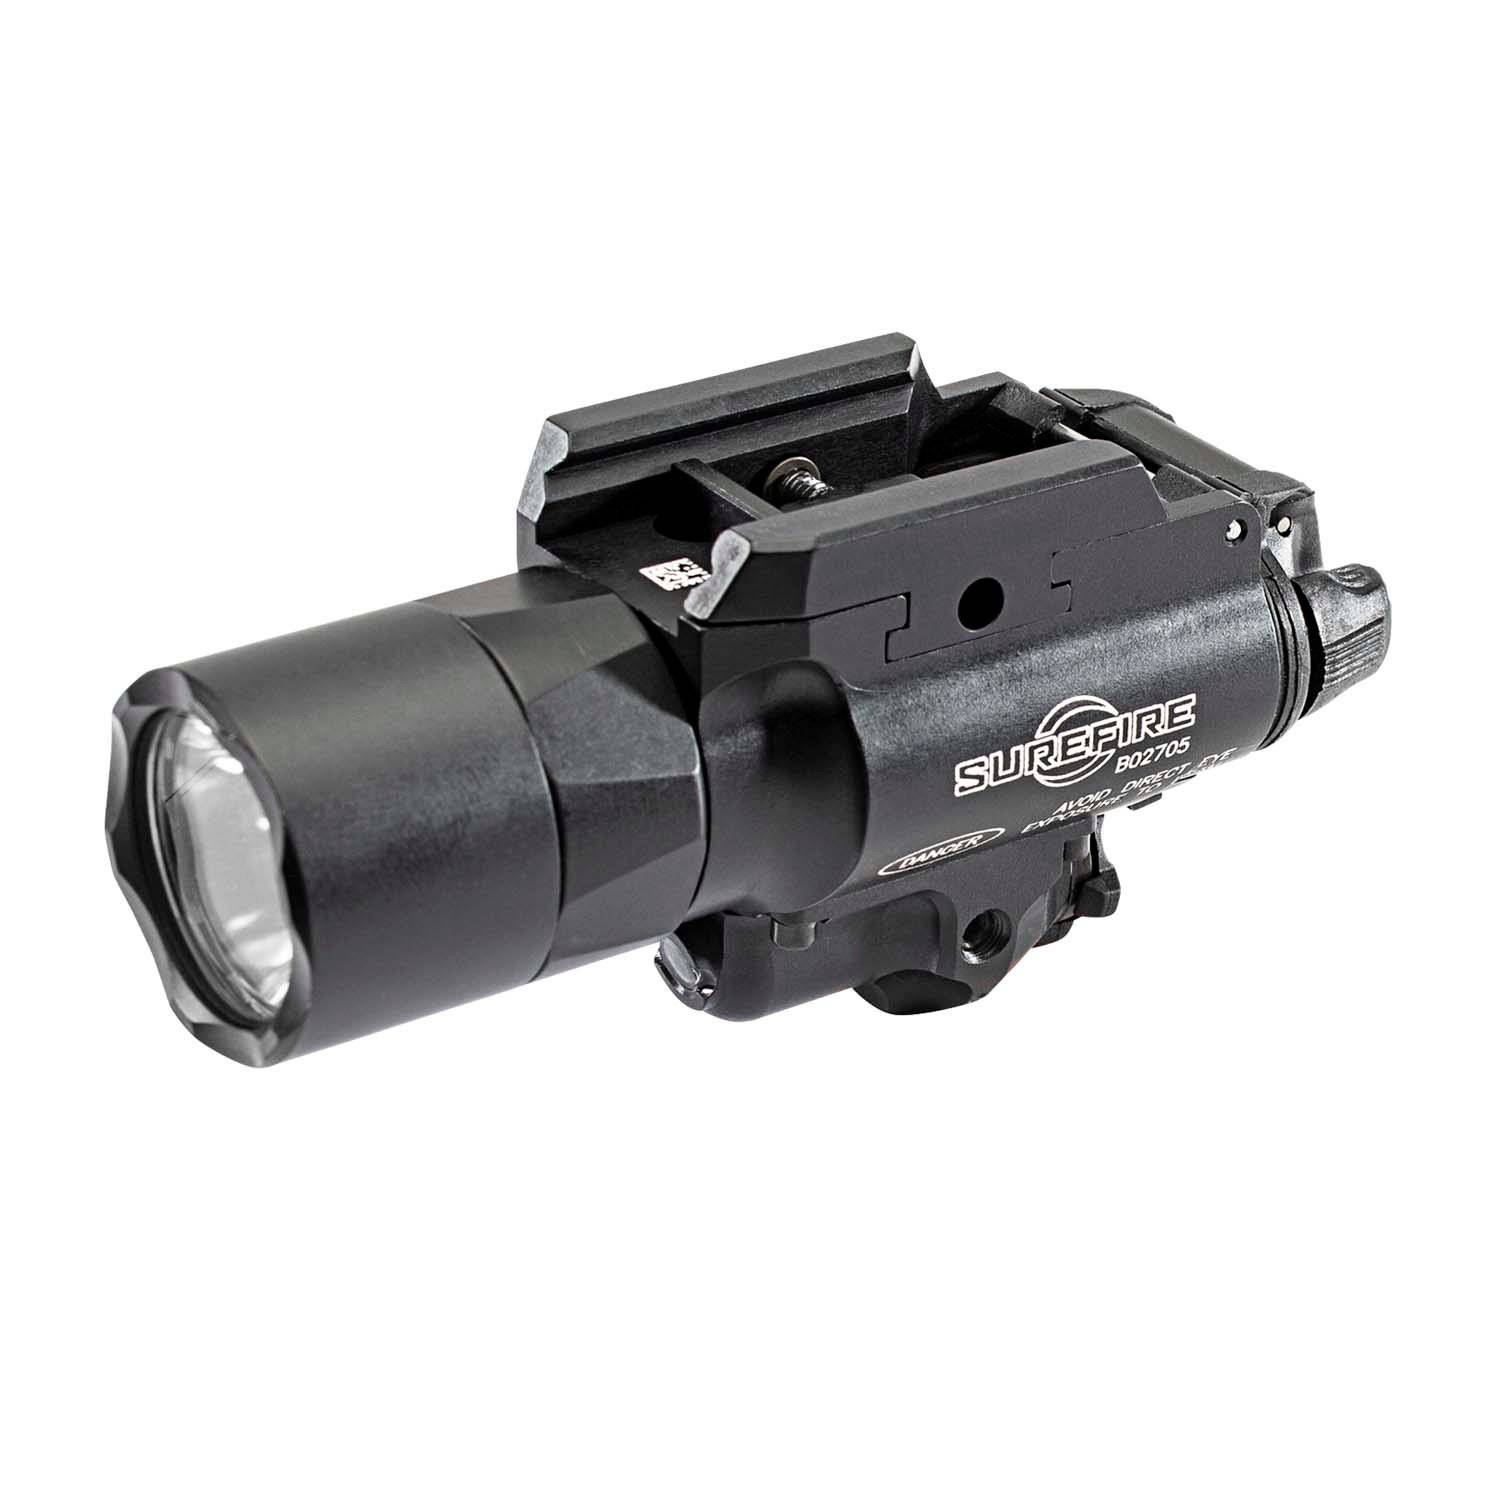 SureFire X400 Ultra LED Handgun or Long Gun Light w/ Green L